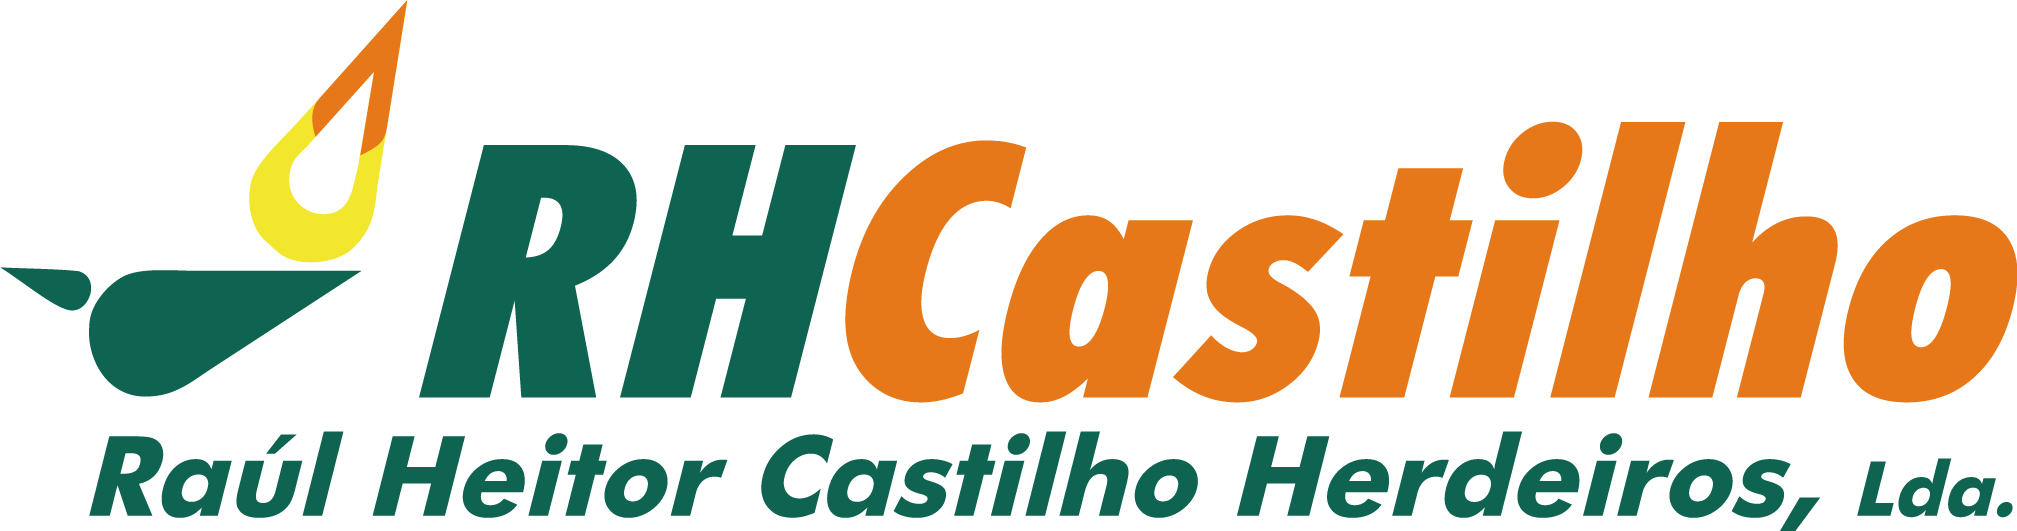 RH Castilho